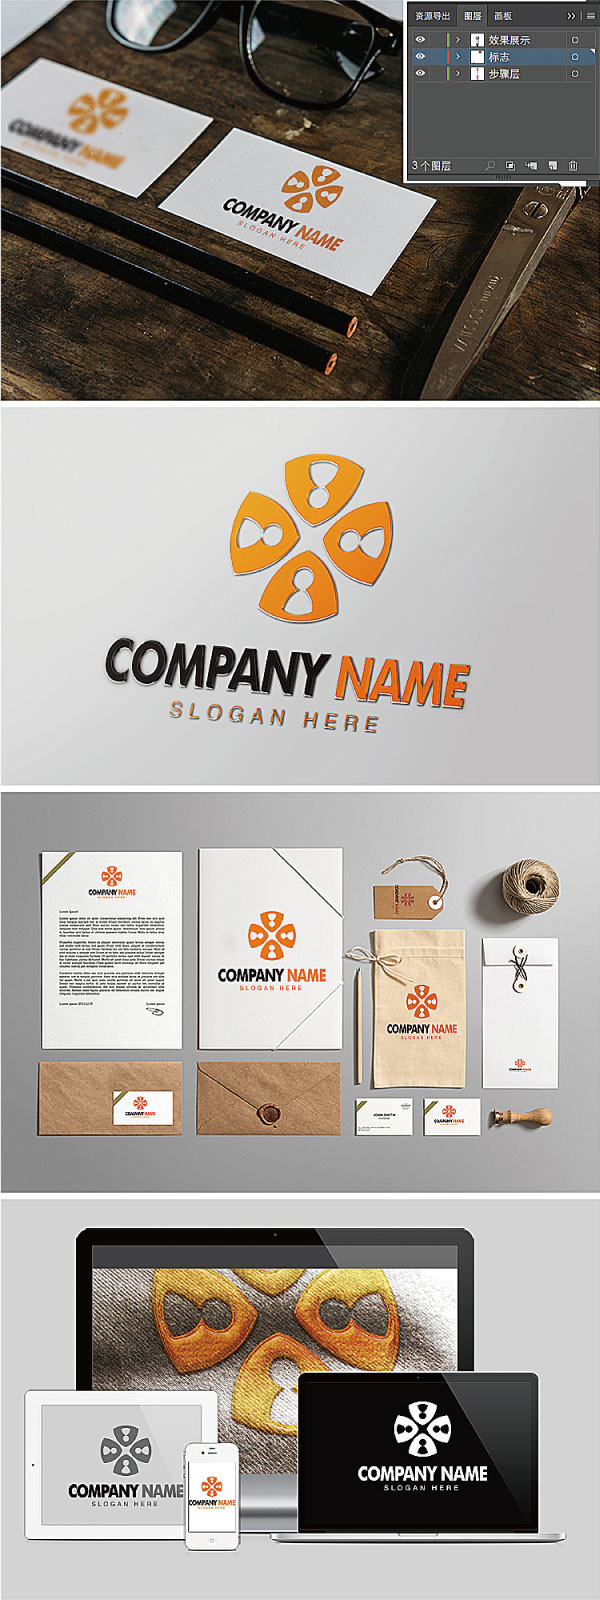 标志,企业logo,标识设计